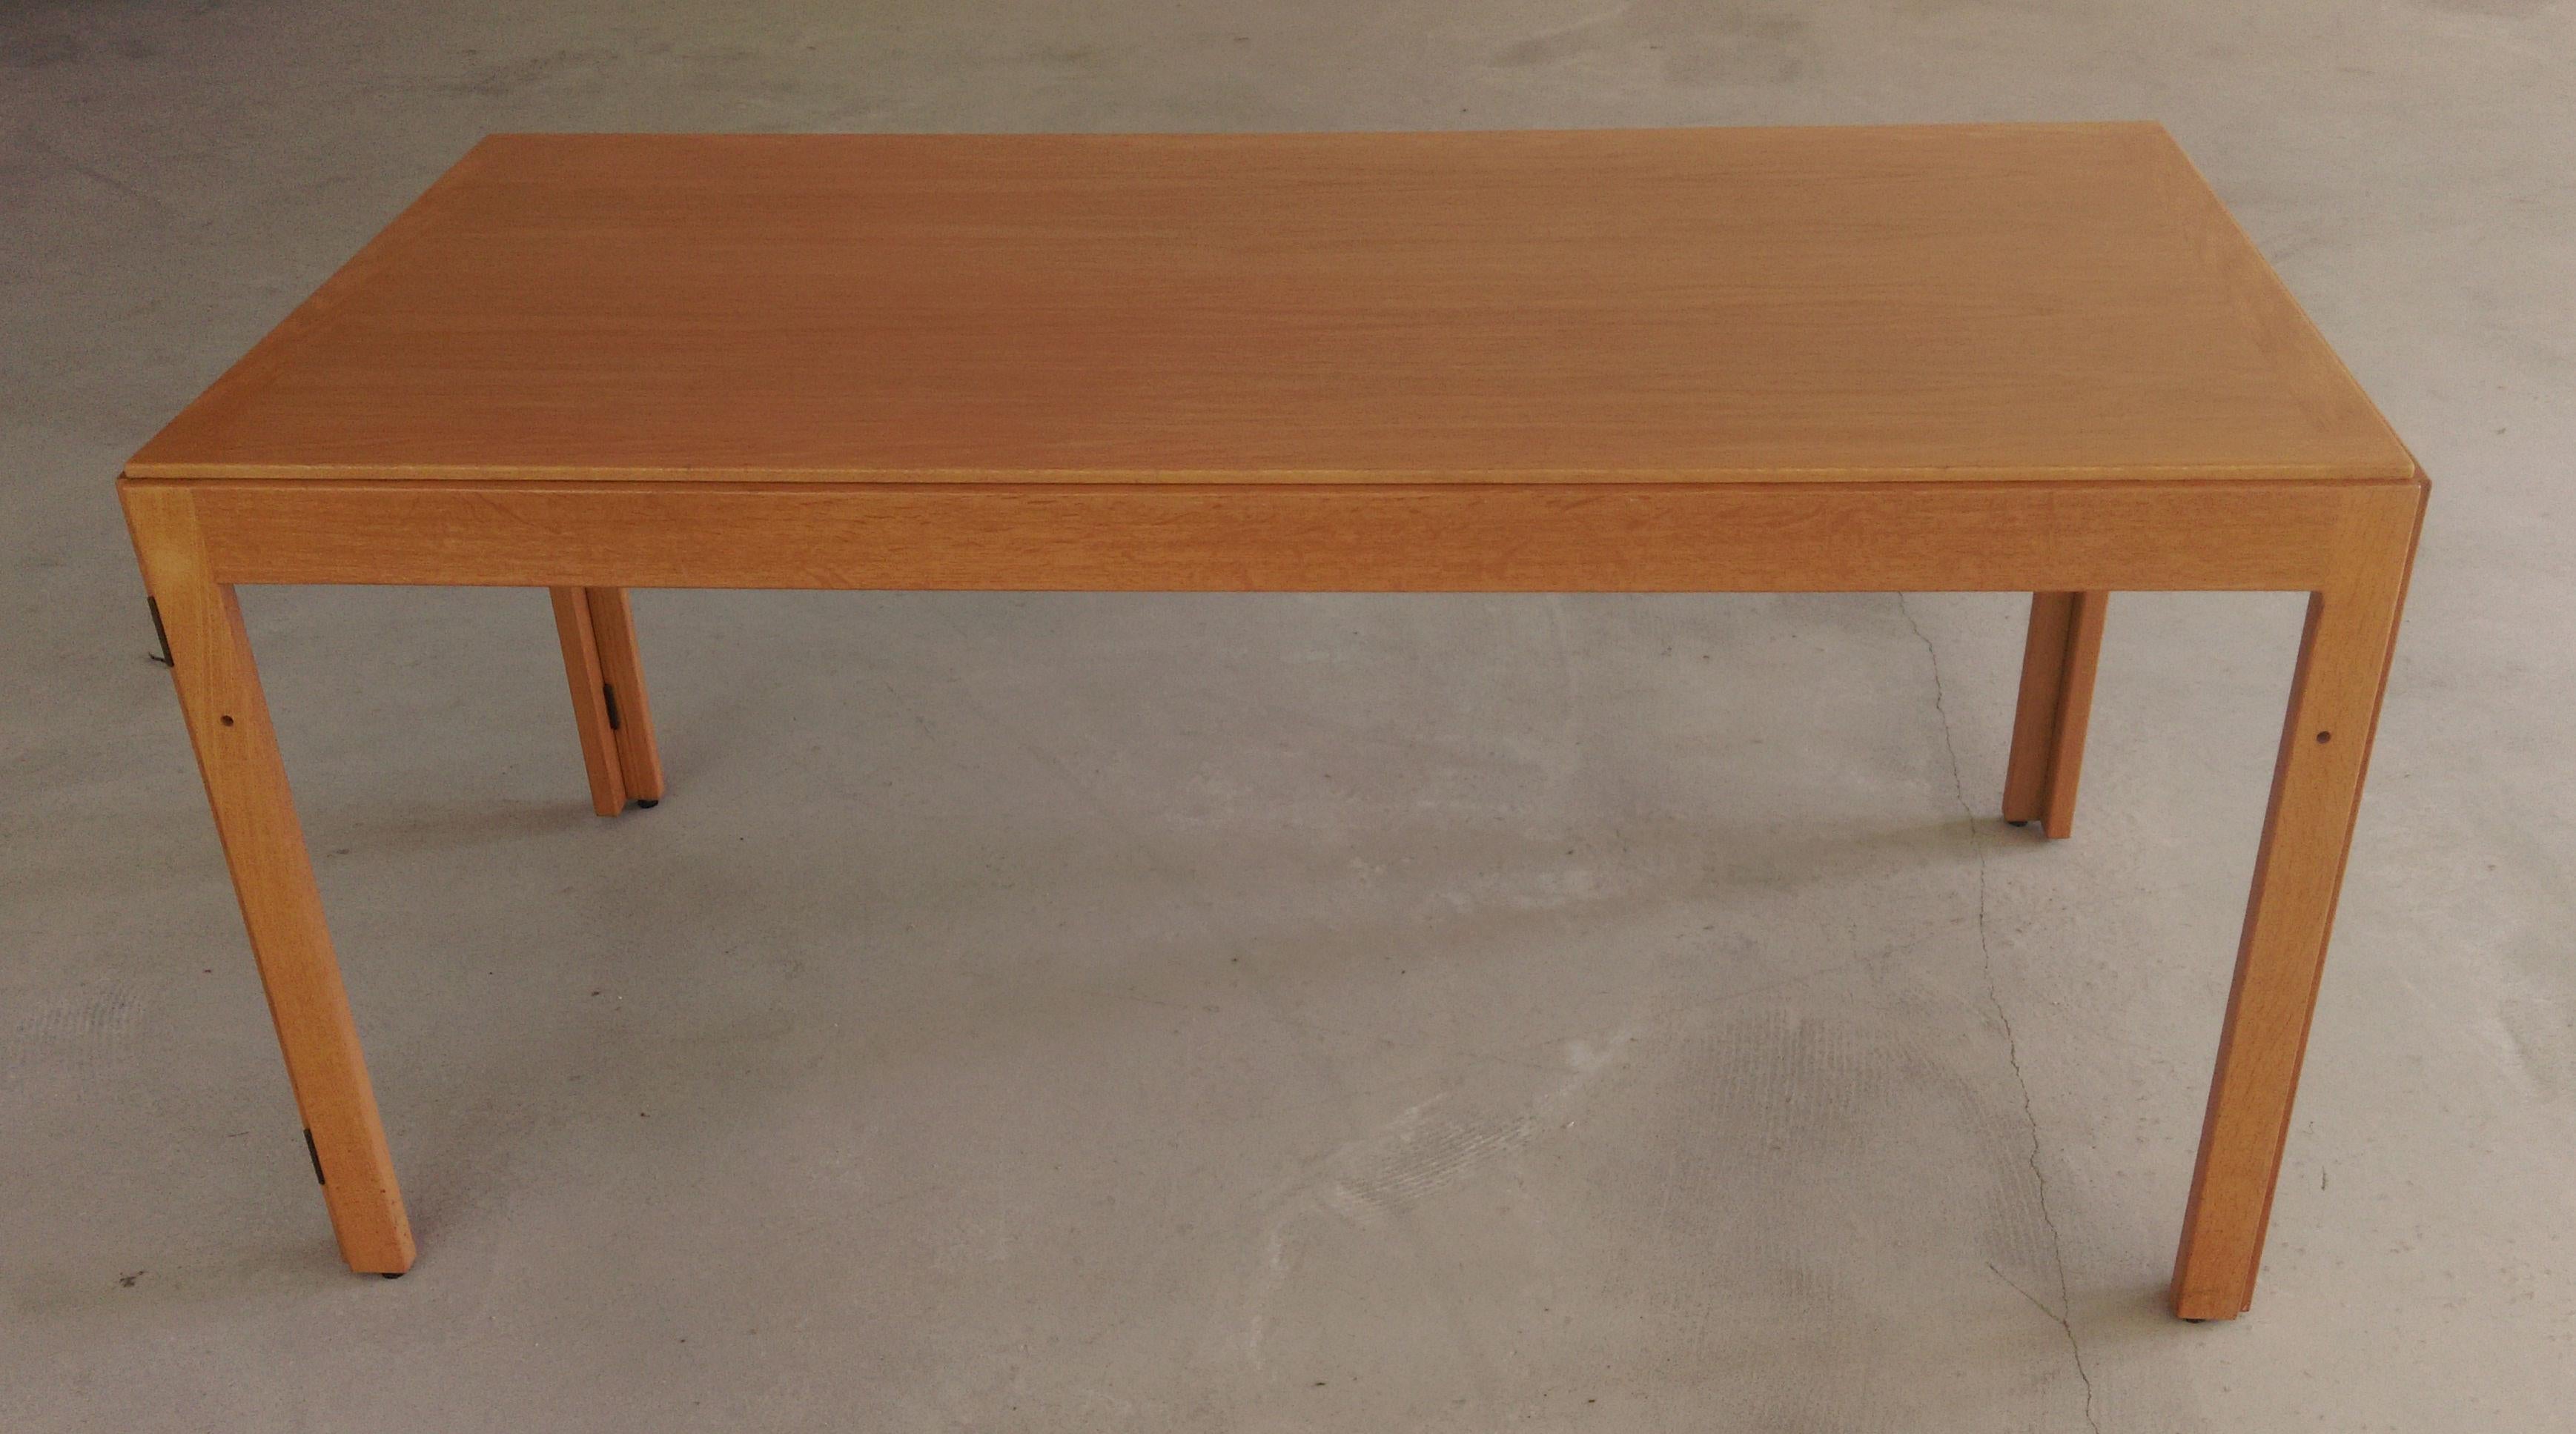 1970er Jahre Vollständig restaurierte dänische multifunktionale Børge Mogensen Tische in Eiche

Die flexiblen Klapptische wurden 1971 von Børge Mogensen entworfen. Ursprünglich waren sie als Konferenztische gedacht, die aus mehreren Einheiten